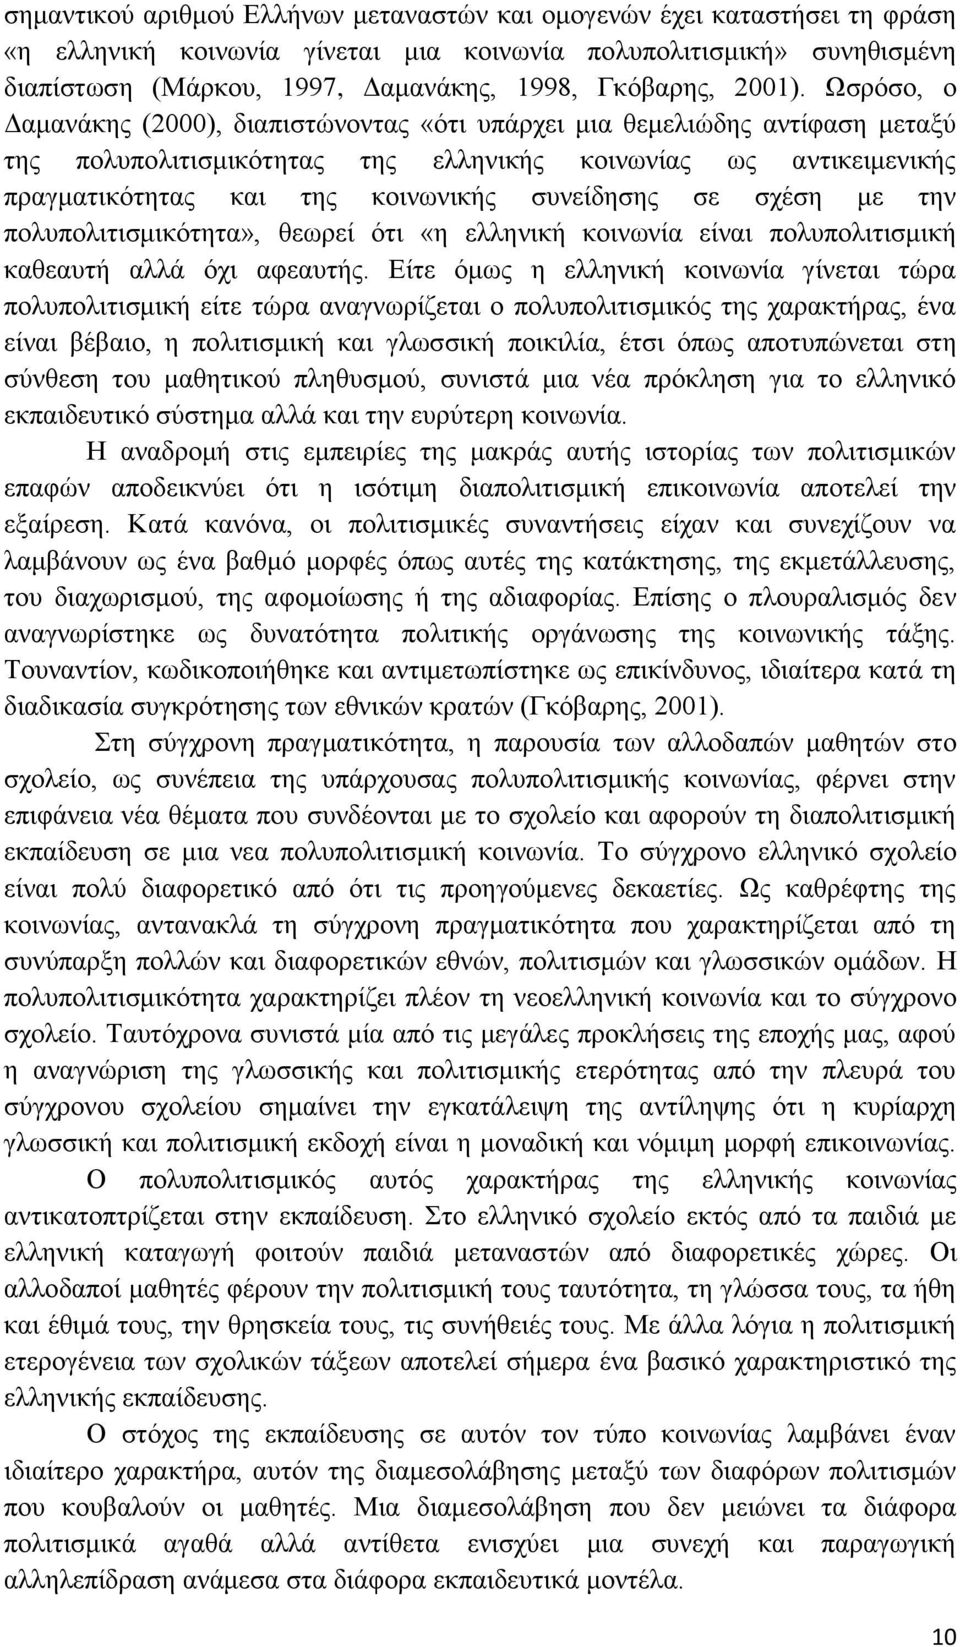 Ωσρόσο, ο Δαμανάκης (2000), διαπιστώνοντας «ότι υπάρχει μια θεμελιώδης αντίφαση μεταξύ της πολυπολιτισμικότητας της ελληνικής κοινωνίας ως αντικειμενικής πραγματικότητας και της κοινωνικής συνείδησης